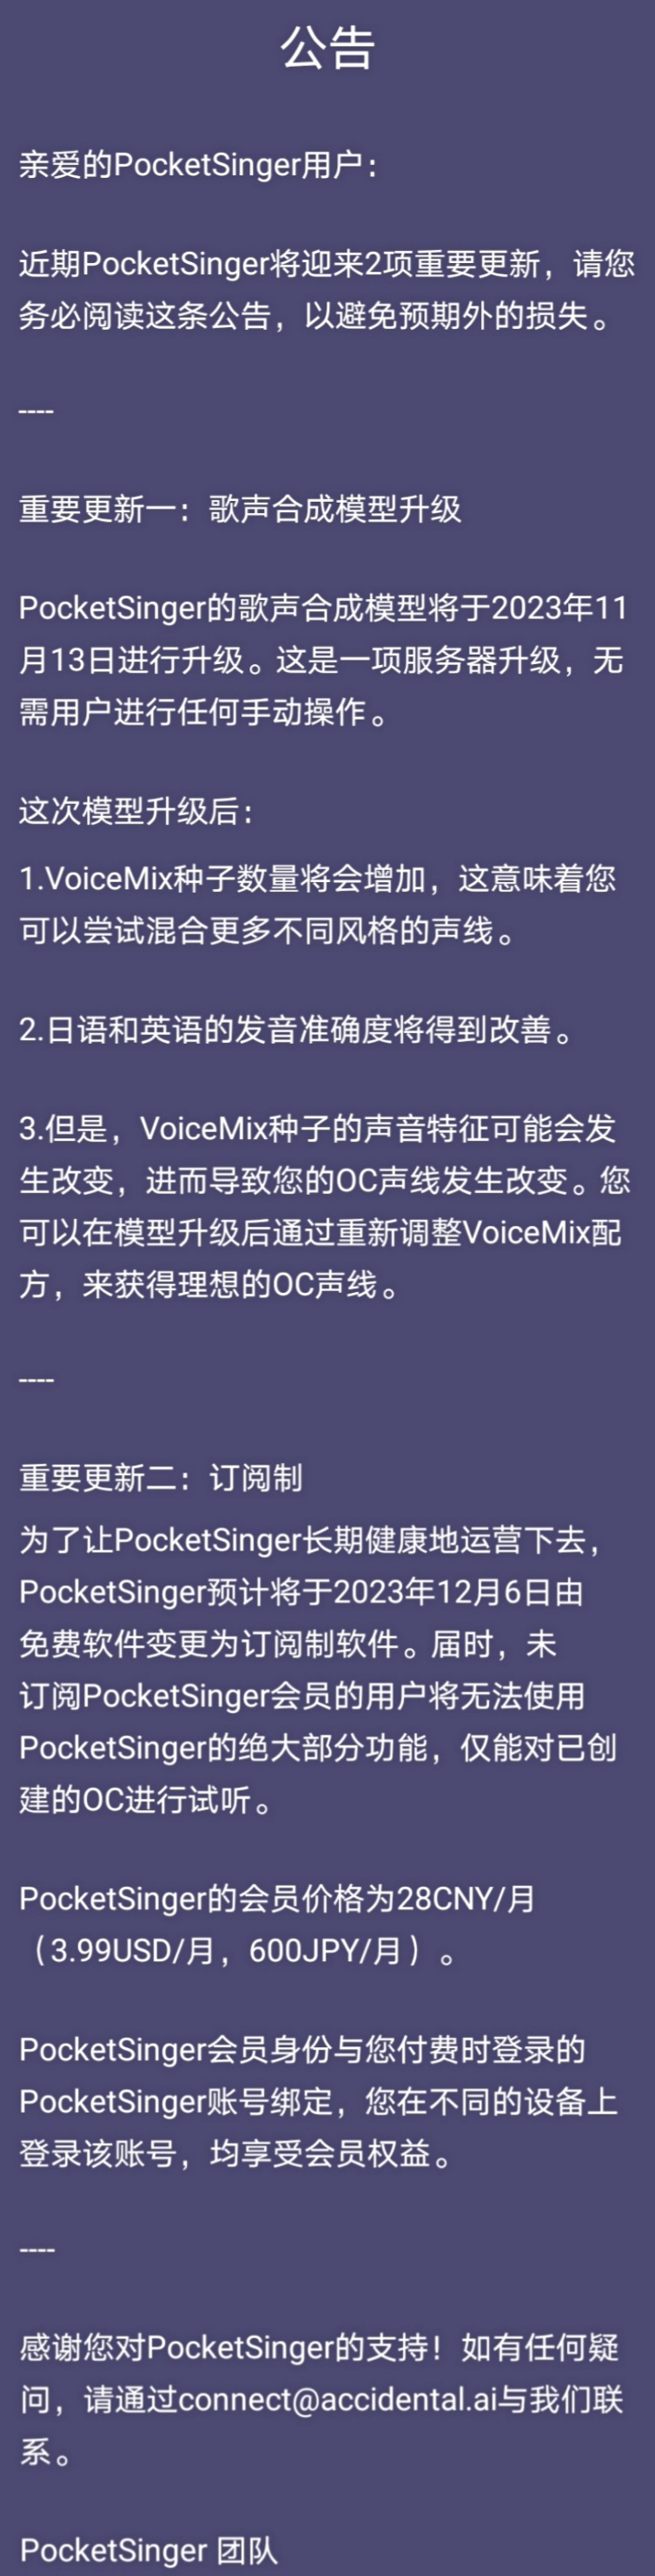 [快讯] Pocket Singer 将于12月6日开始收费